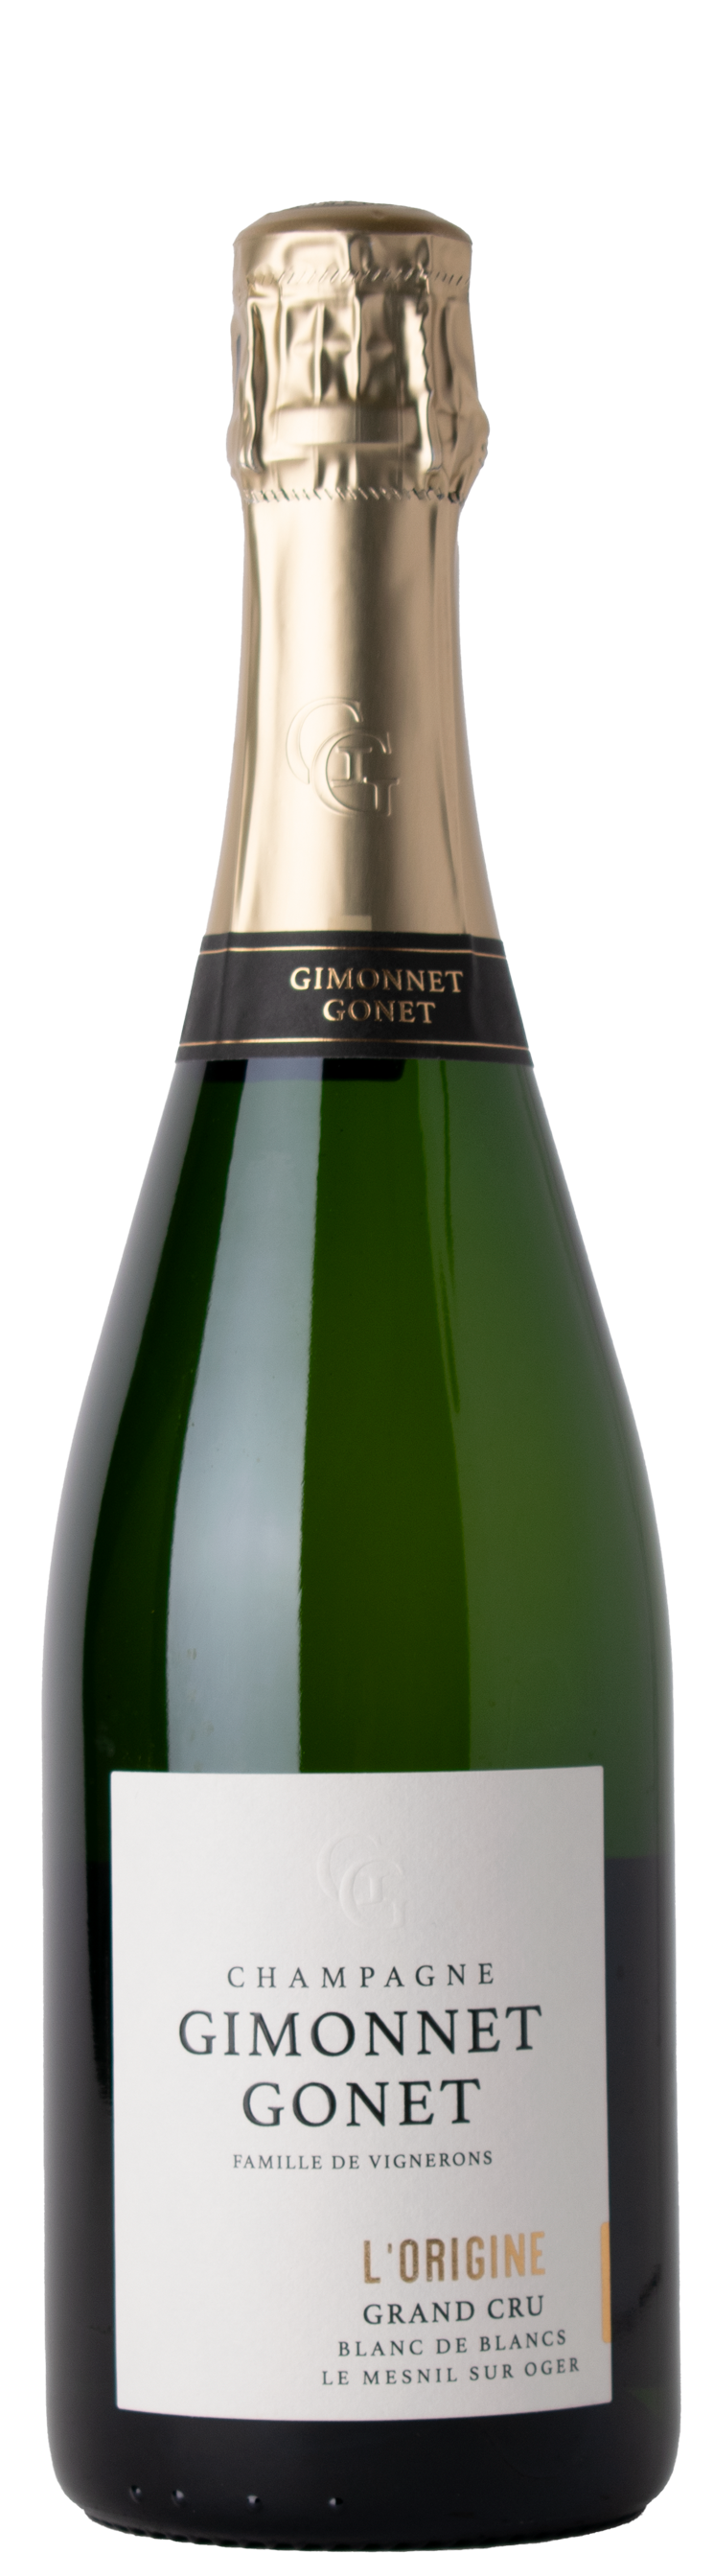 Champagne Grand Cru Blanc de Blancs L'Origine brut